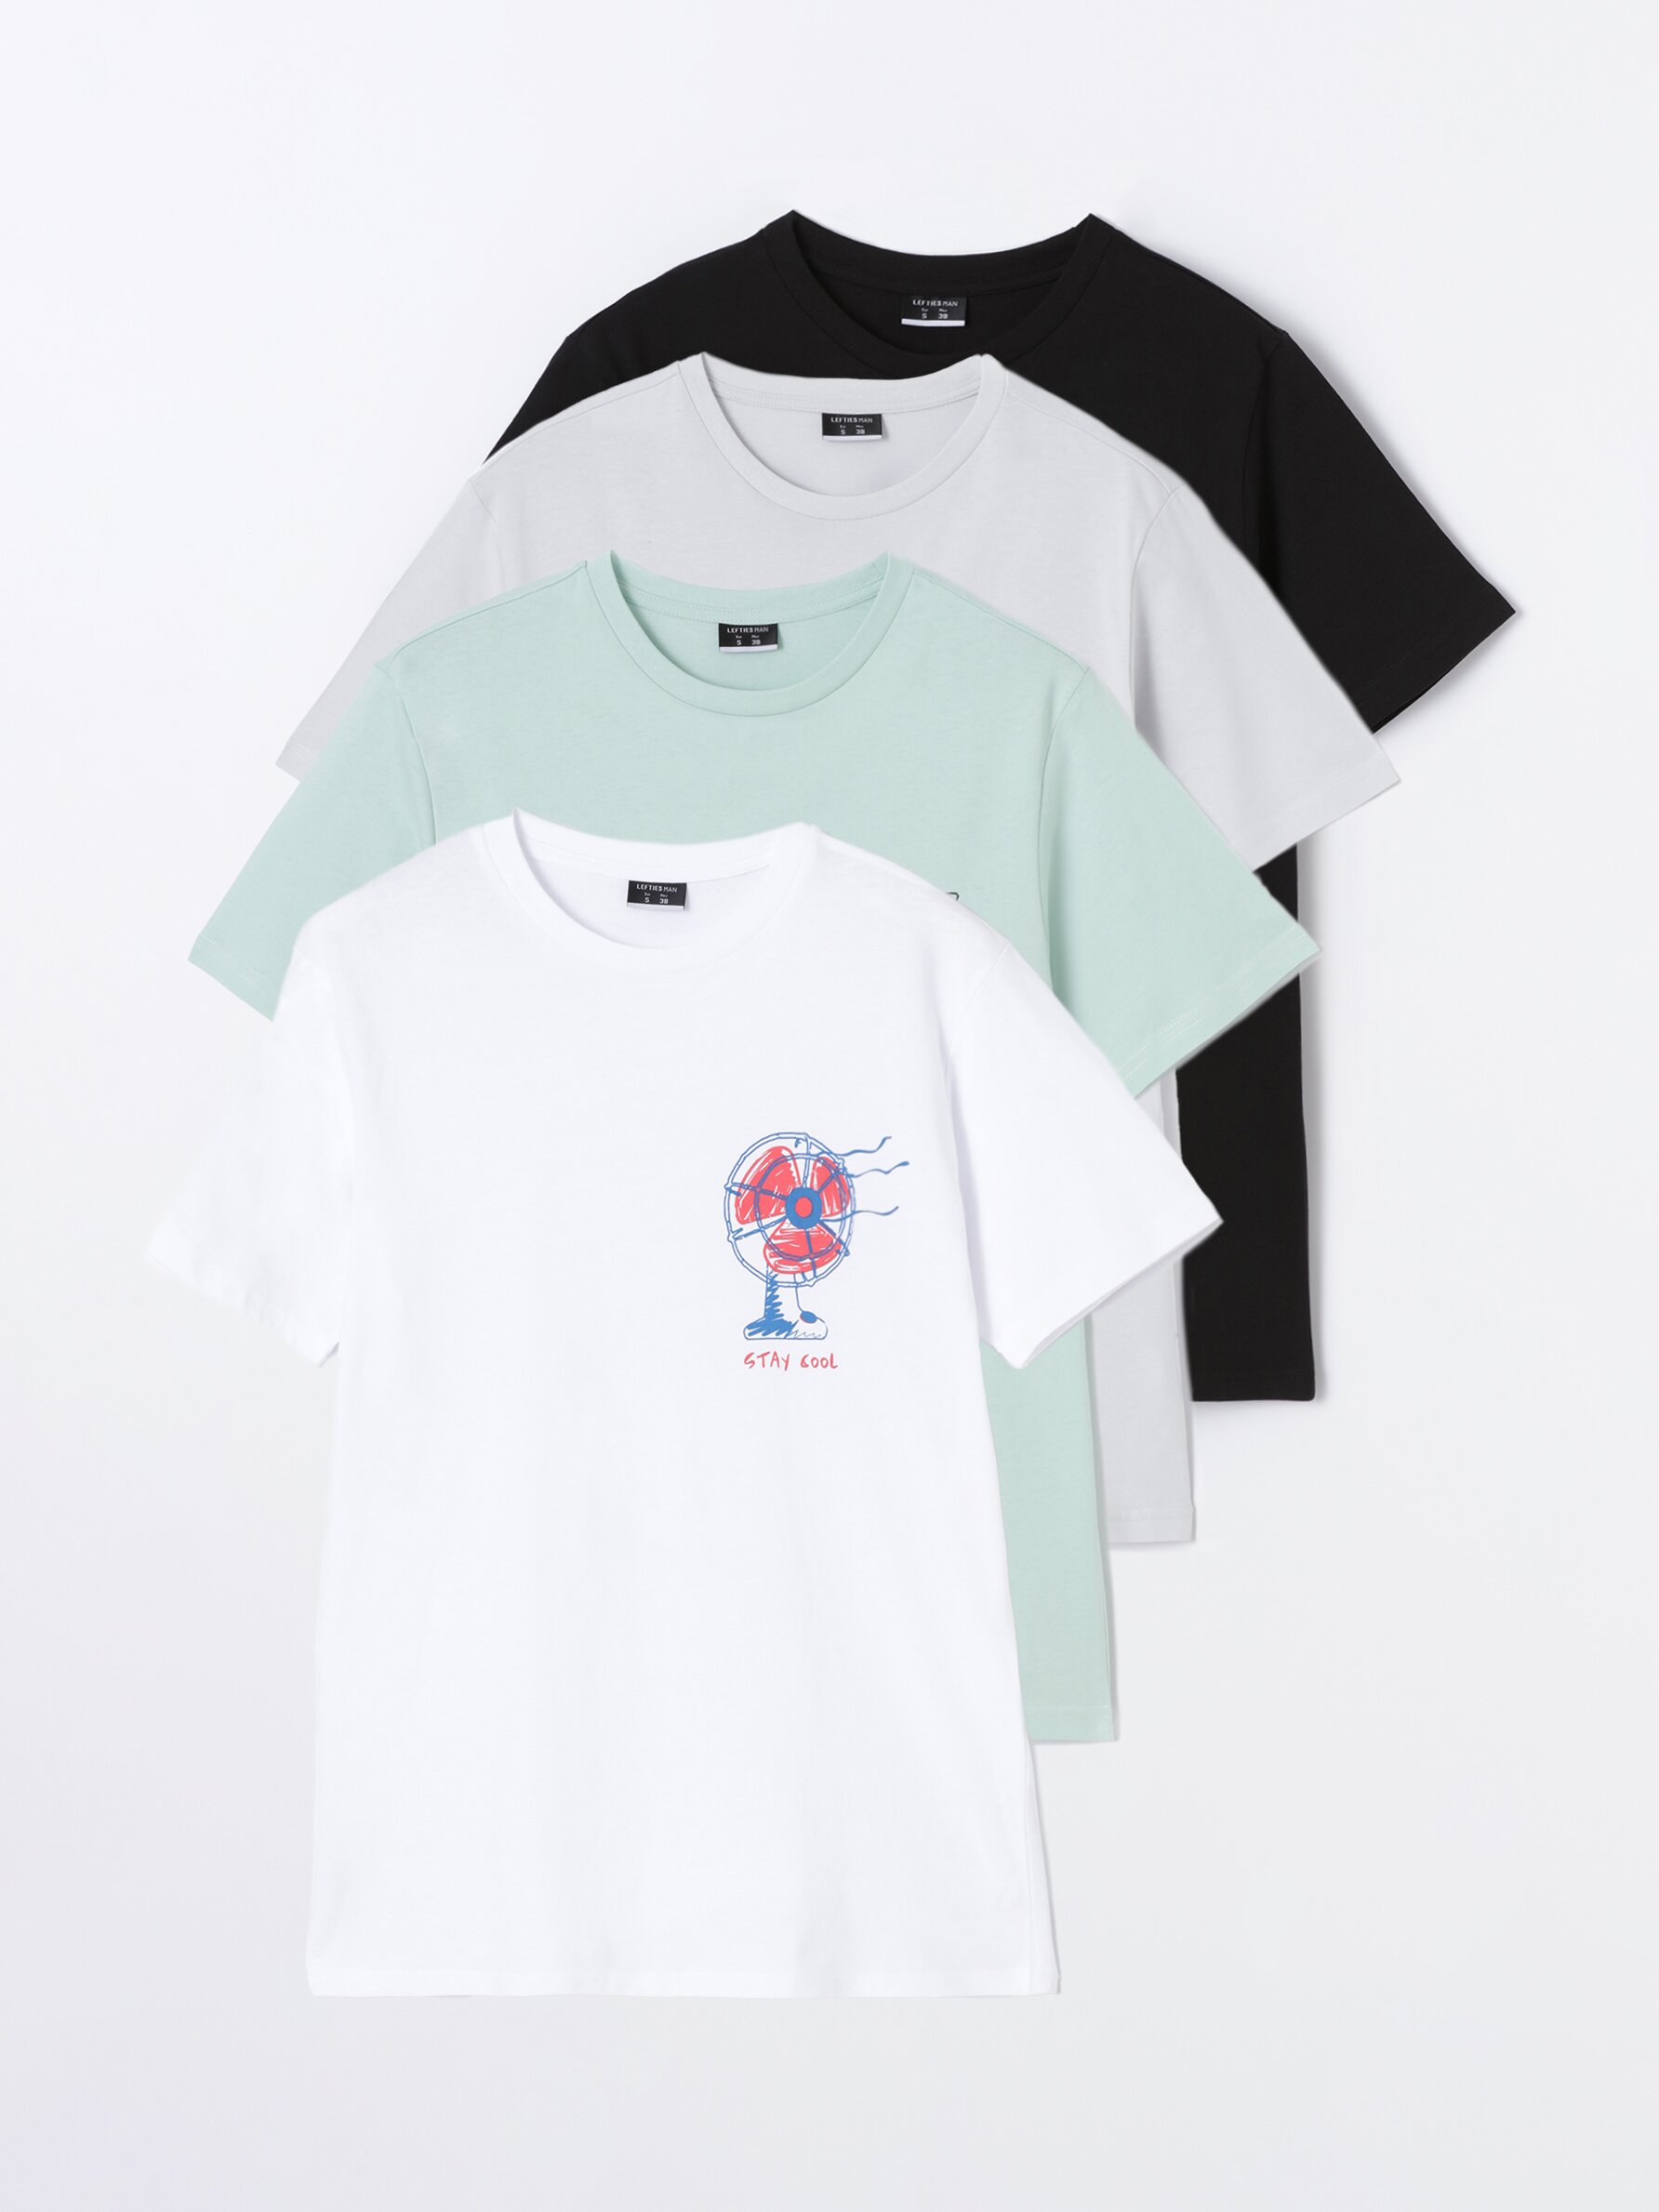 Pack de 4 camisetas estampadas - Camisetas Manga Corta - Camisetas - ROPA -  Hombre 